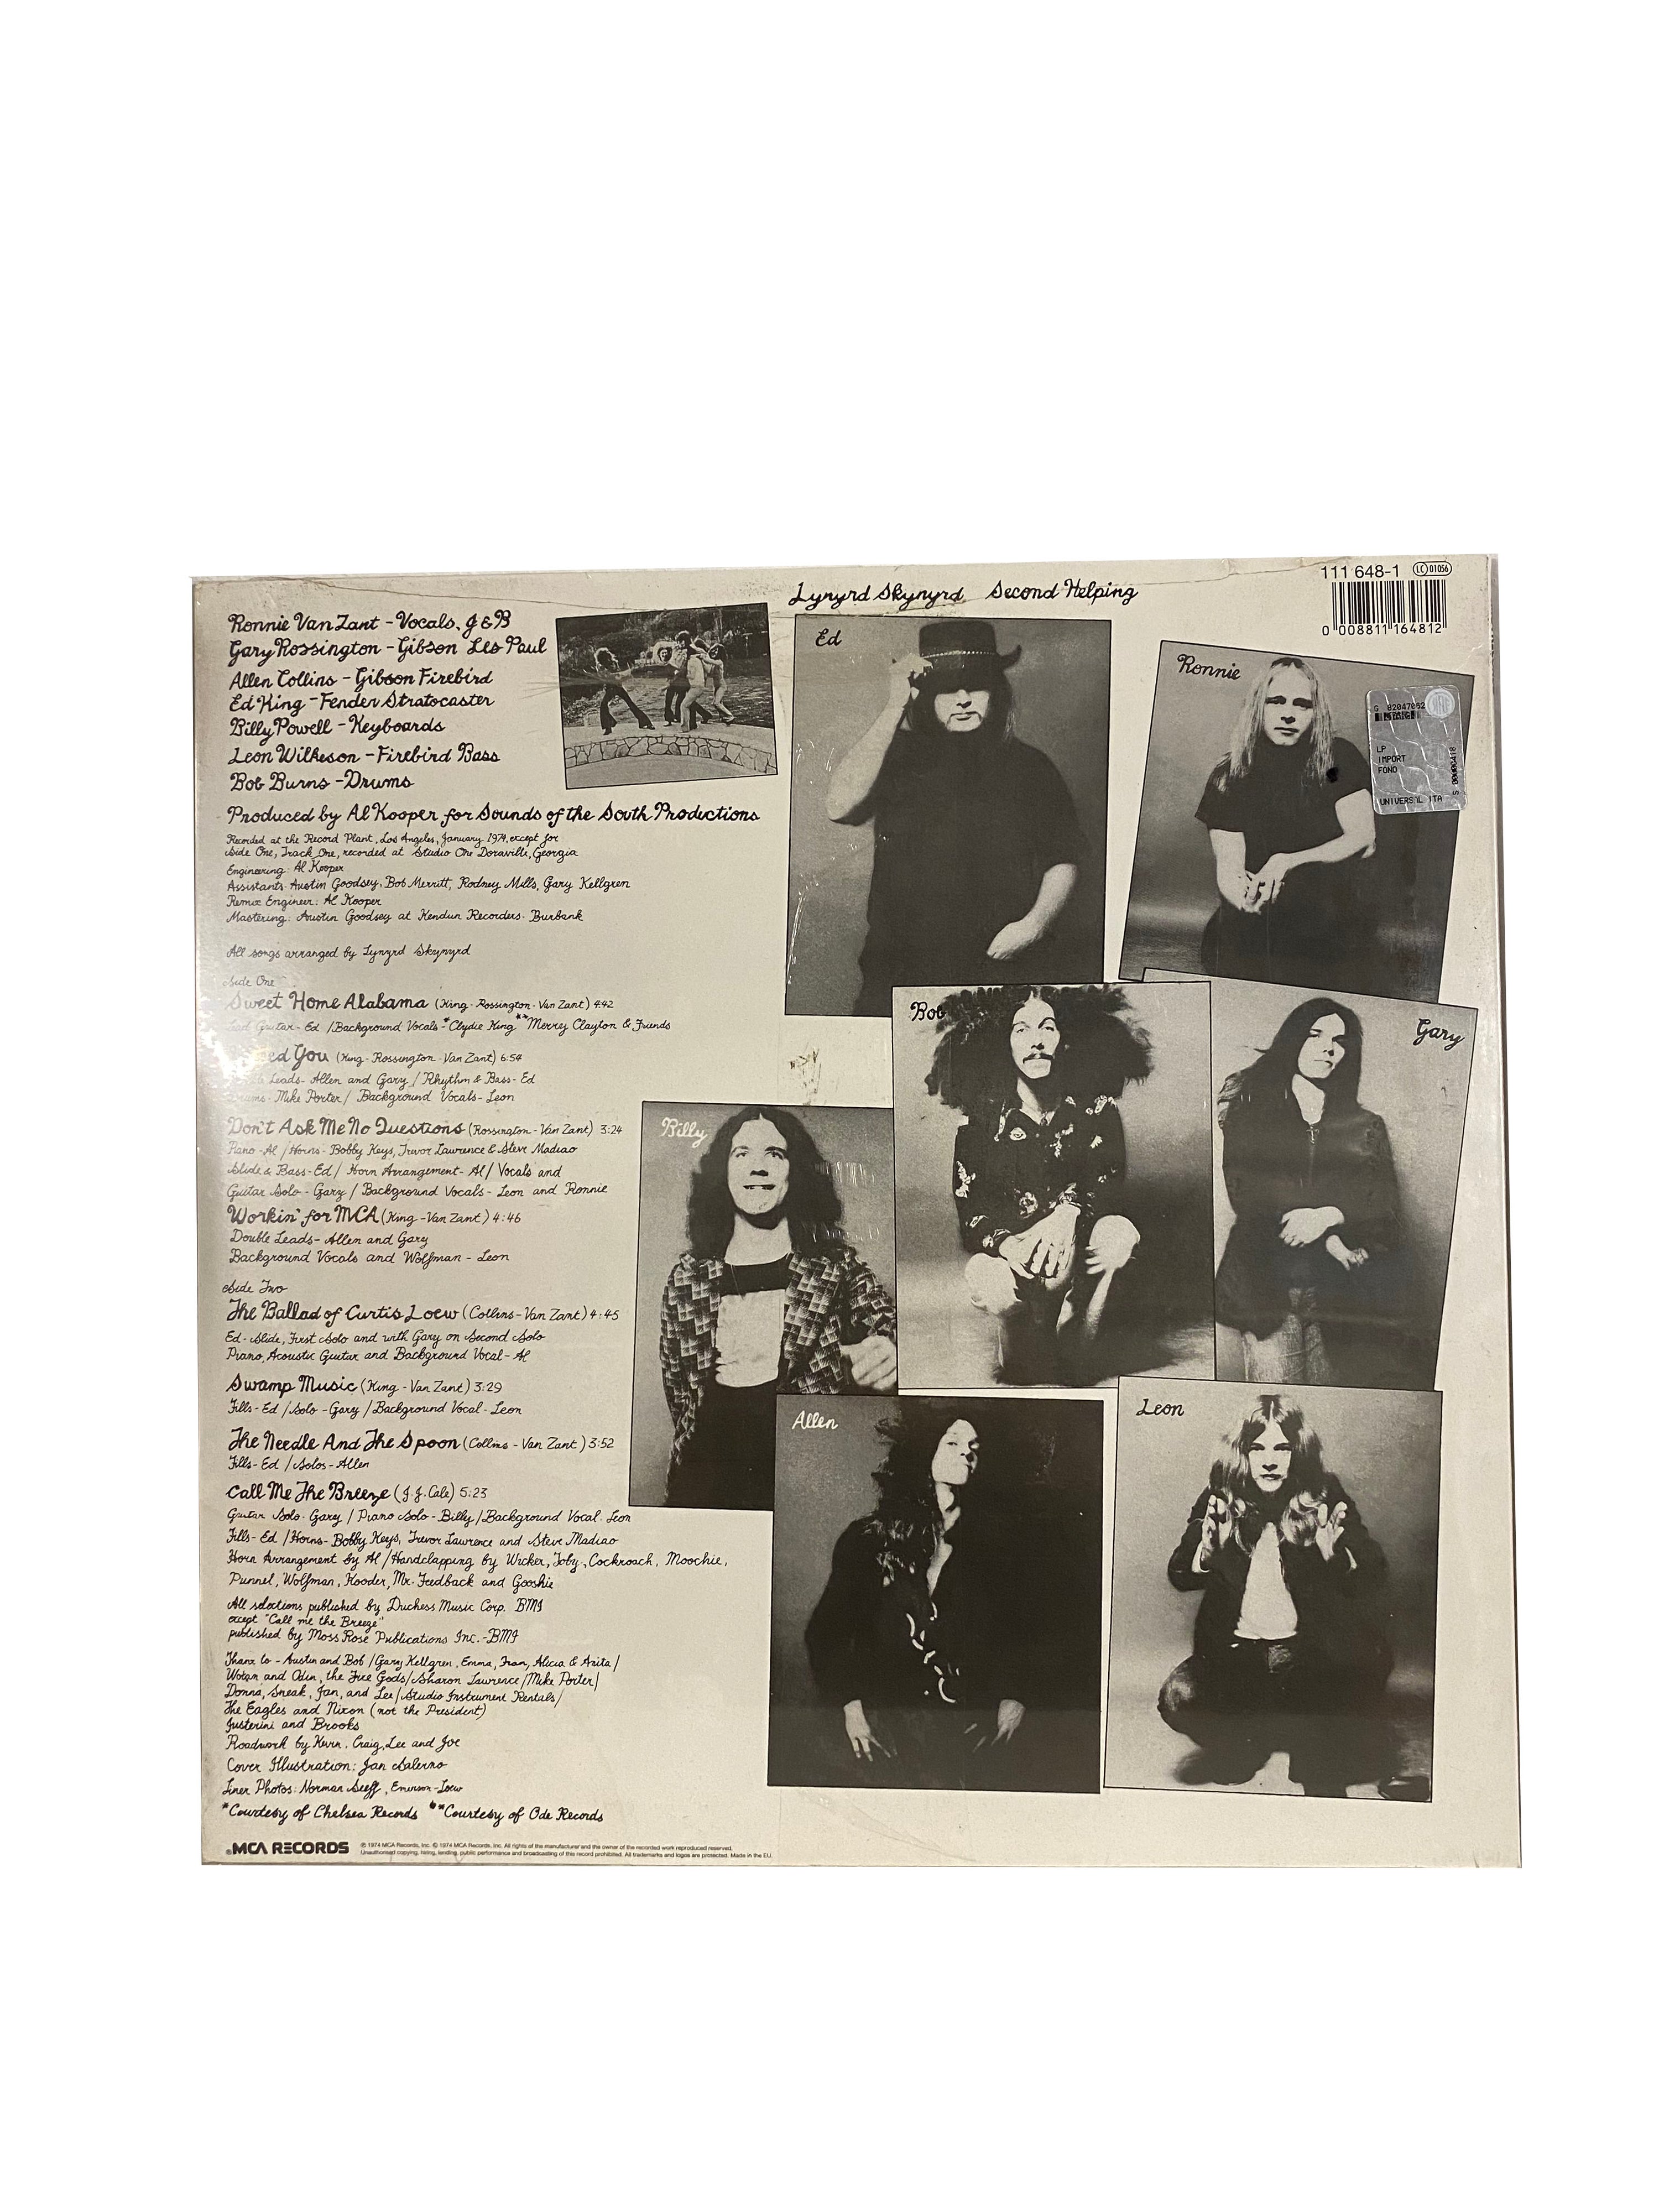 Second Helping (LP;ALBUM), by Lynyard Skynyrd